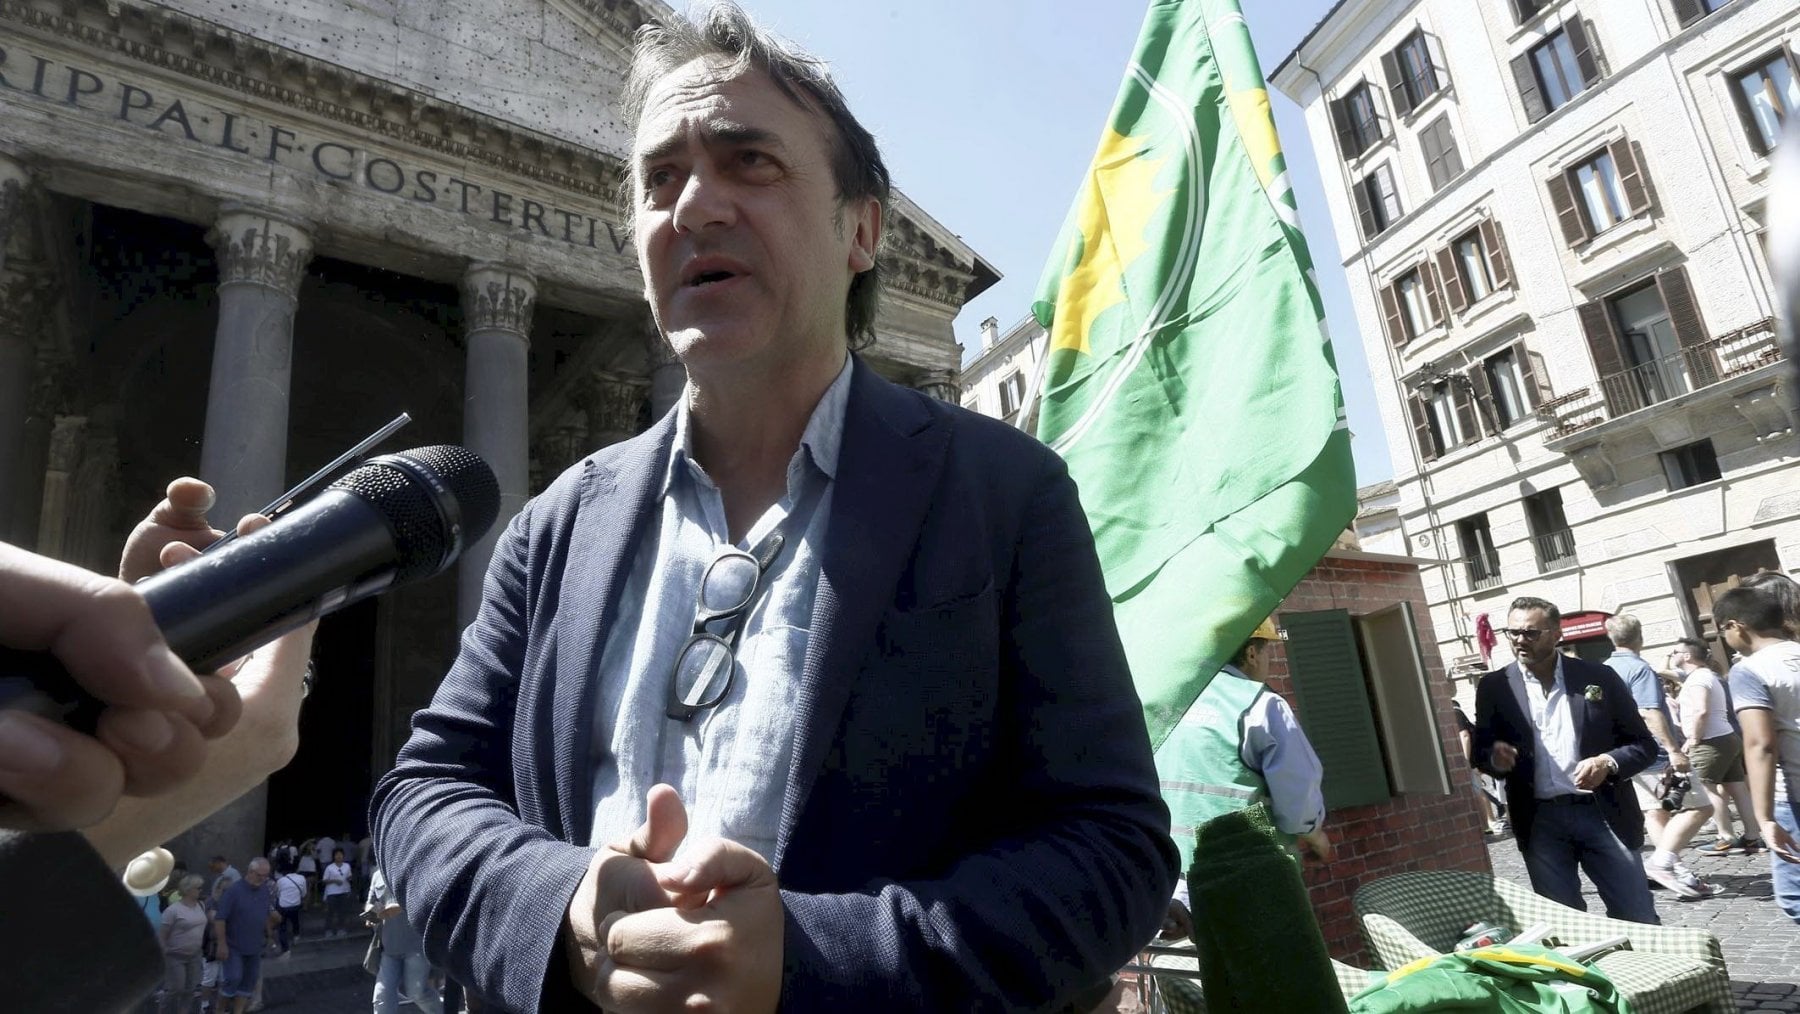 Nucleare, Bonelli: "Il governo vuole mettere le mani nelle tasche degli italiani"